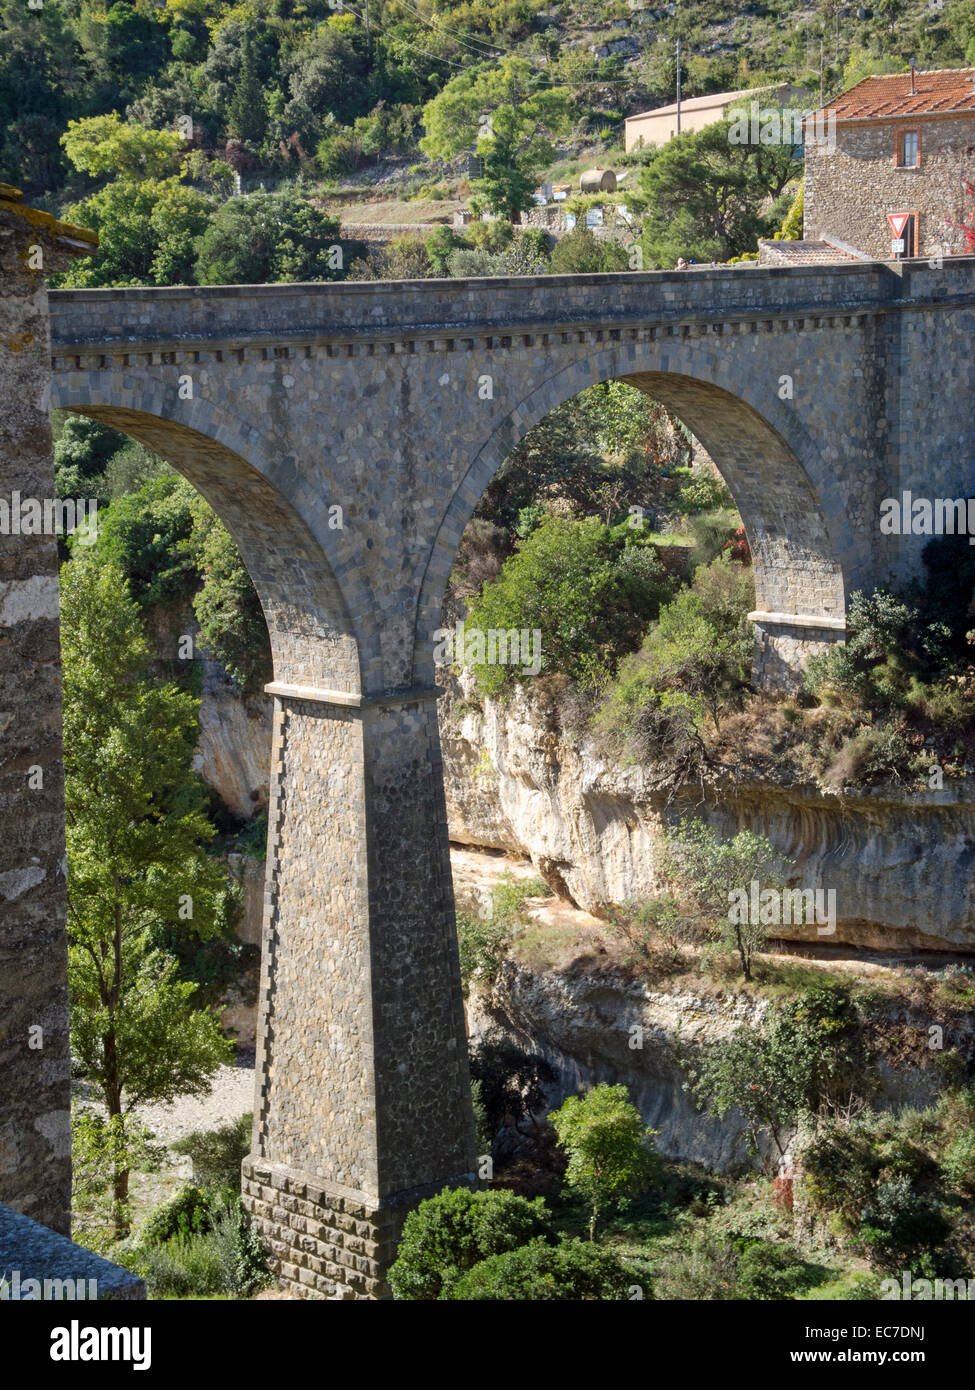 France, Languedoc-Roussillon, Minerve, Bridge Foto Stock